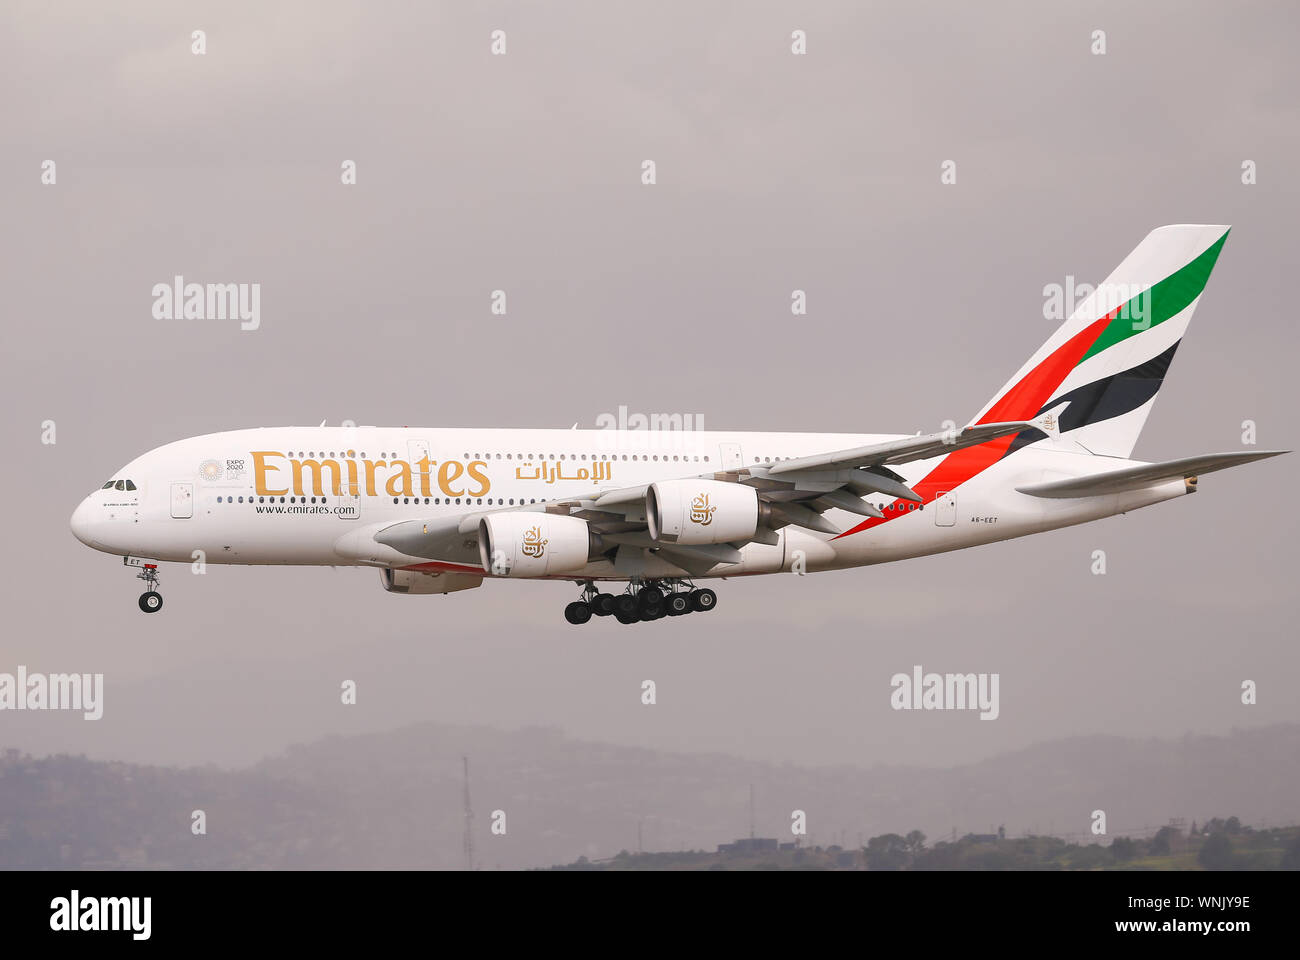 Los Angeles, Kalifornien, USA - 22. Mai 2019: Eine Emirates Airbus A380 landet auf der Los Angeles International Airport (LAX). Es ist bewölkt und regnerisch. Stockfoto